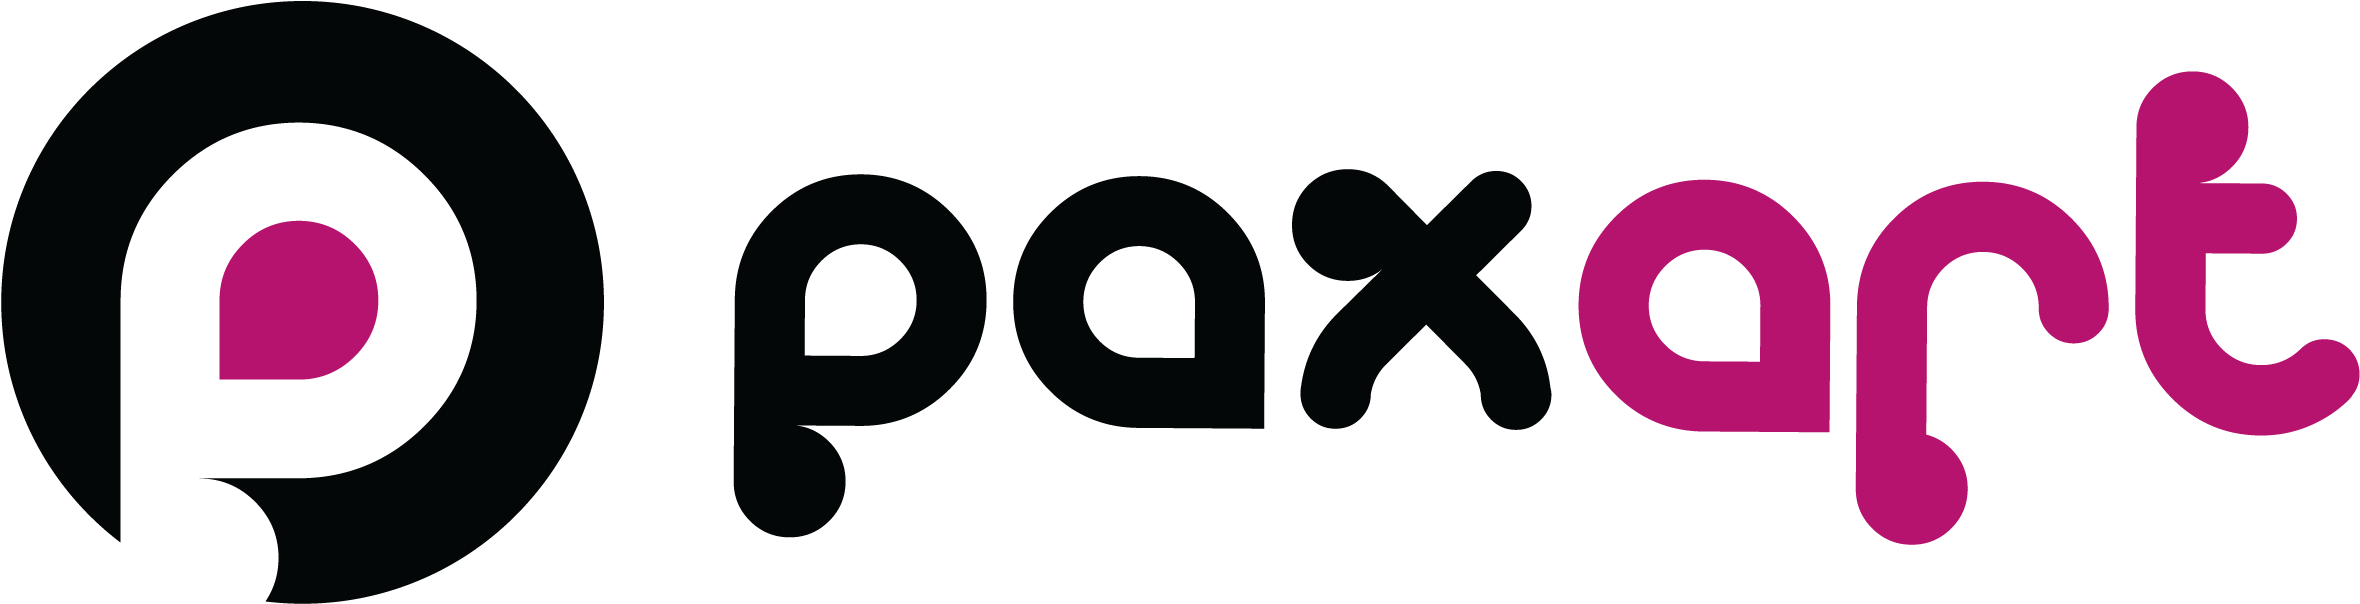 Paxart Logo Design PNG image